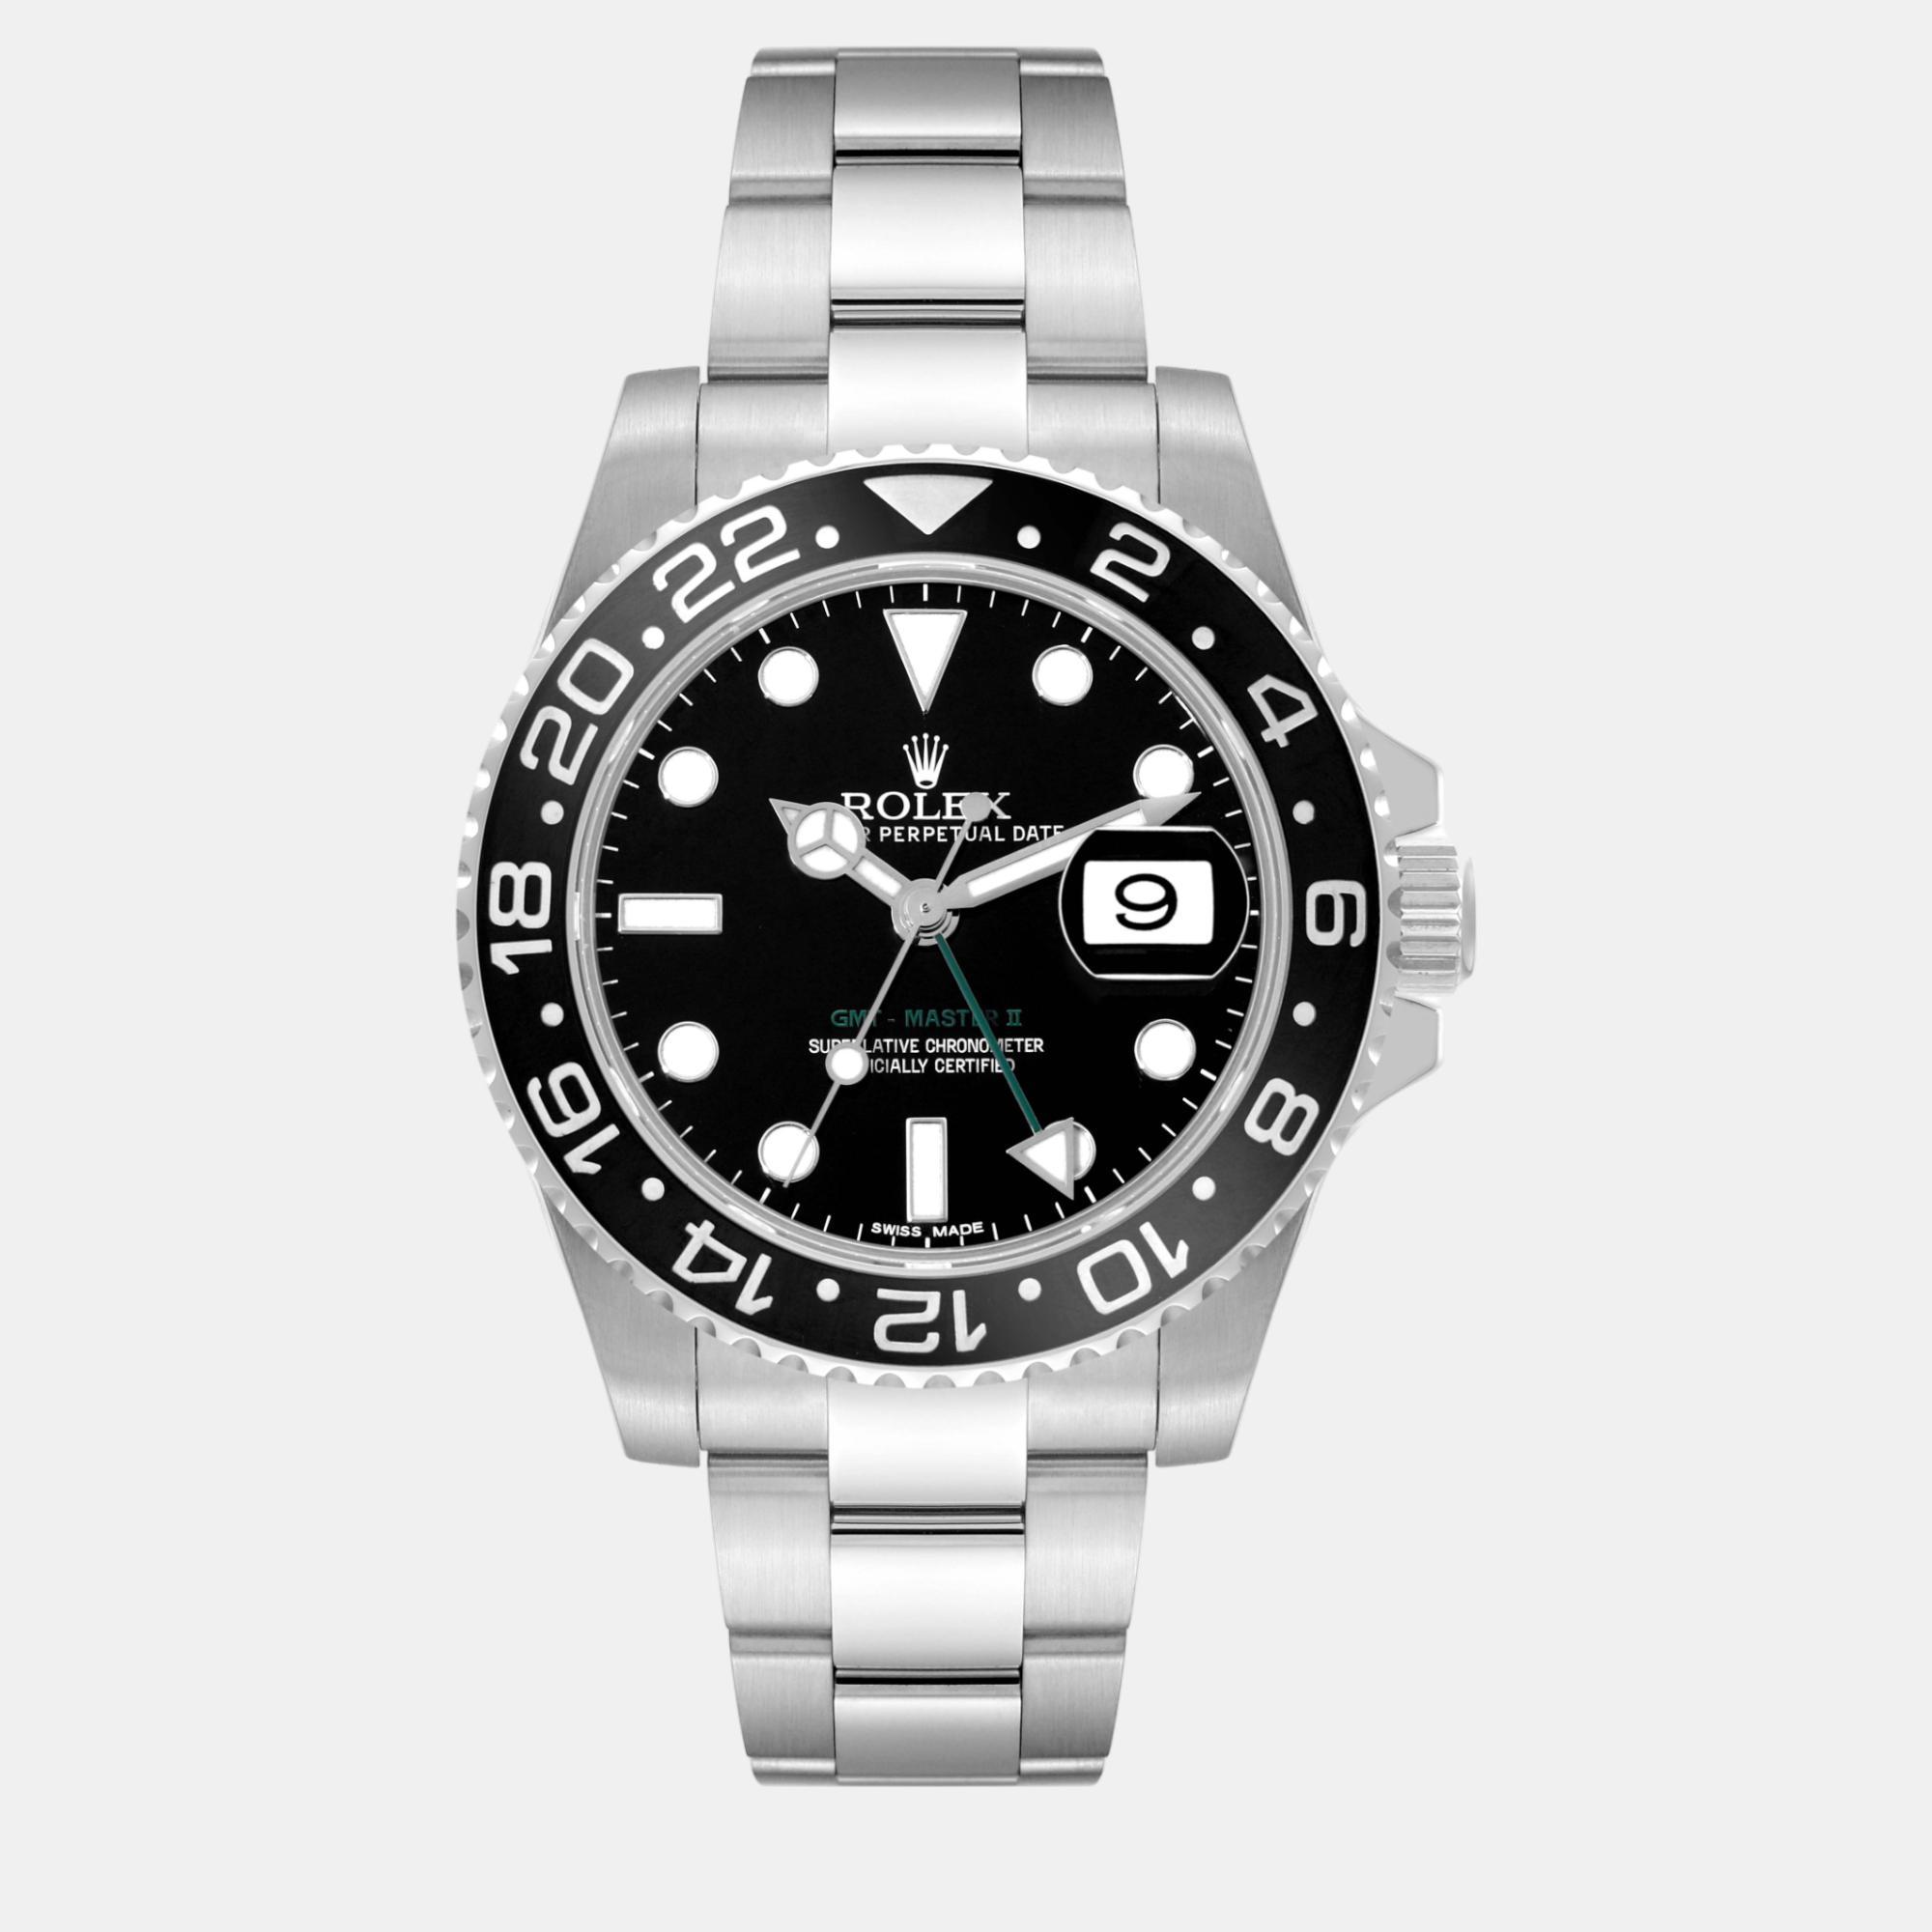 Rolex gmt master ii black dial green hand steel men's watch 116710 40 mm